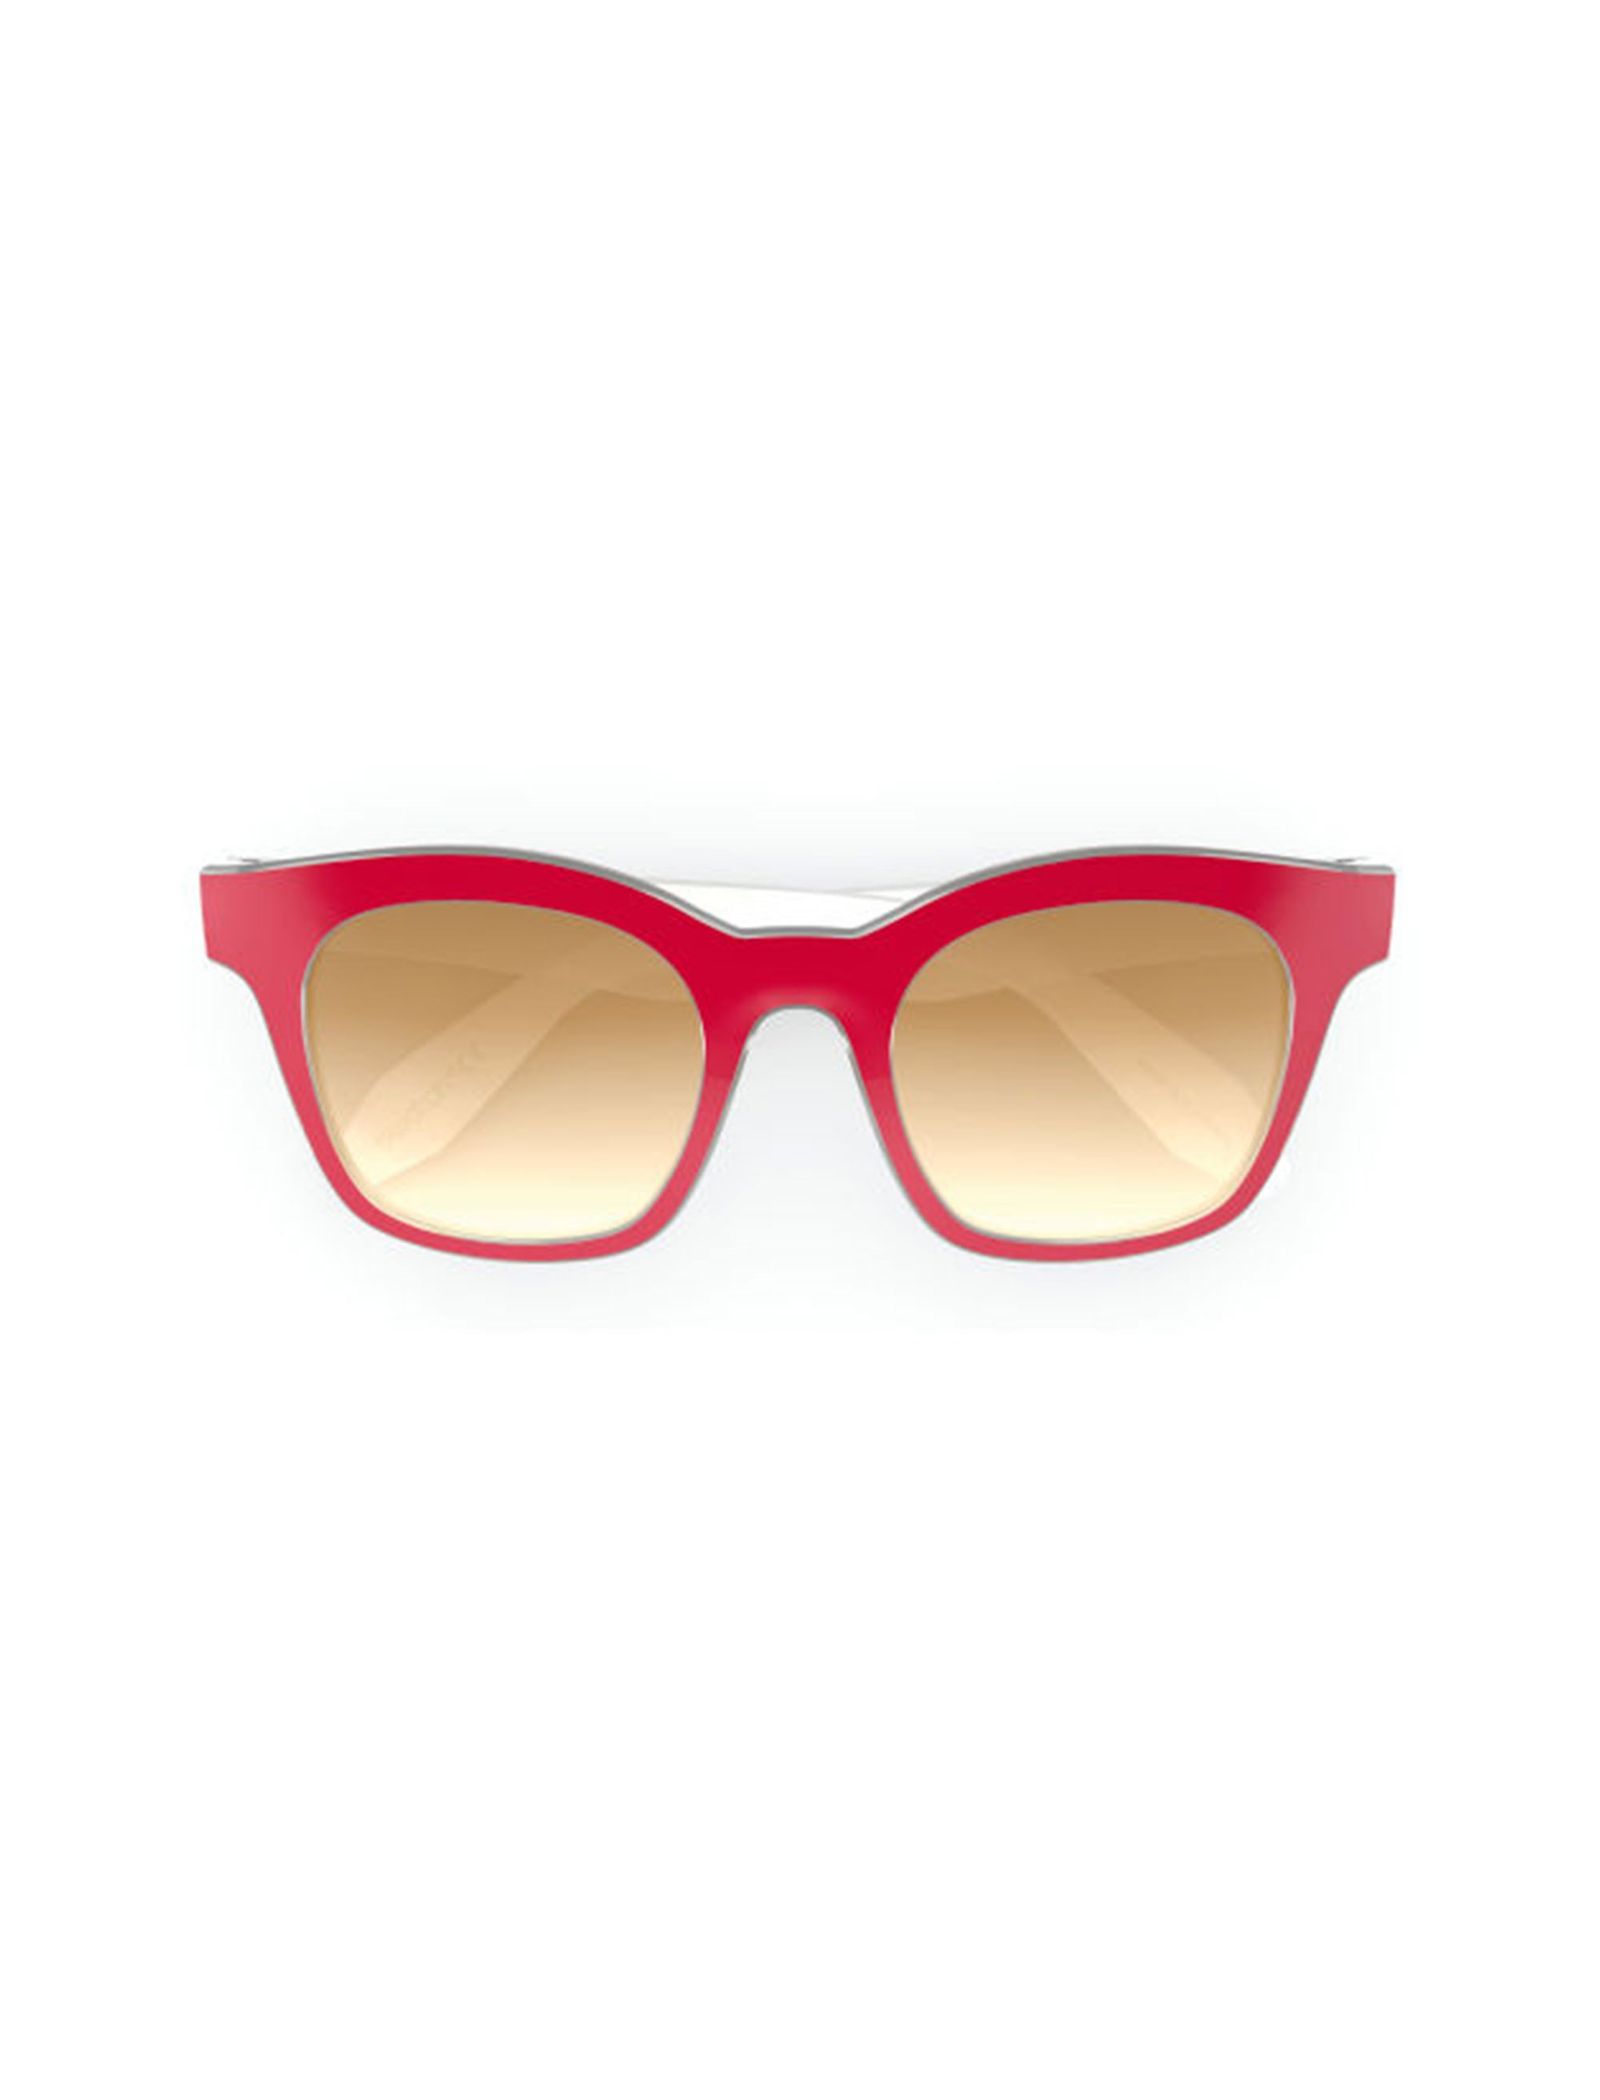 عینک آفتابی ویفرر بزرگسال - سواچ - قرمز و کريستال - 4